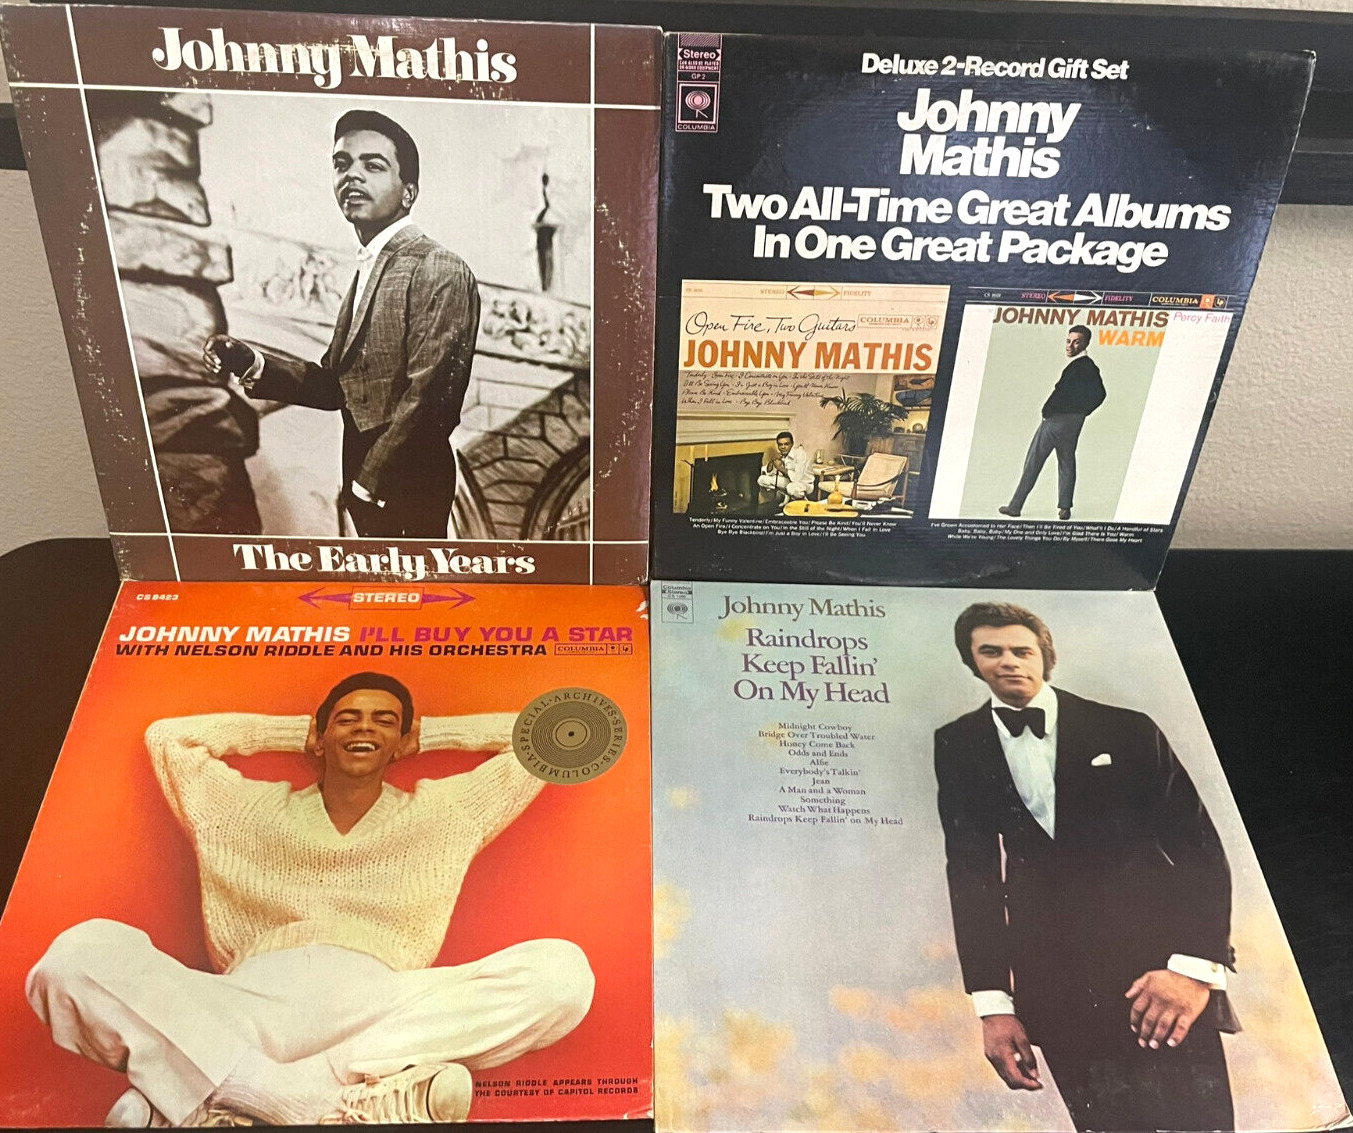 Lot of (4) Johnny Mathis Vinyl LPs Vintage Records Vinly LP Albums Lot 33 RPM